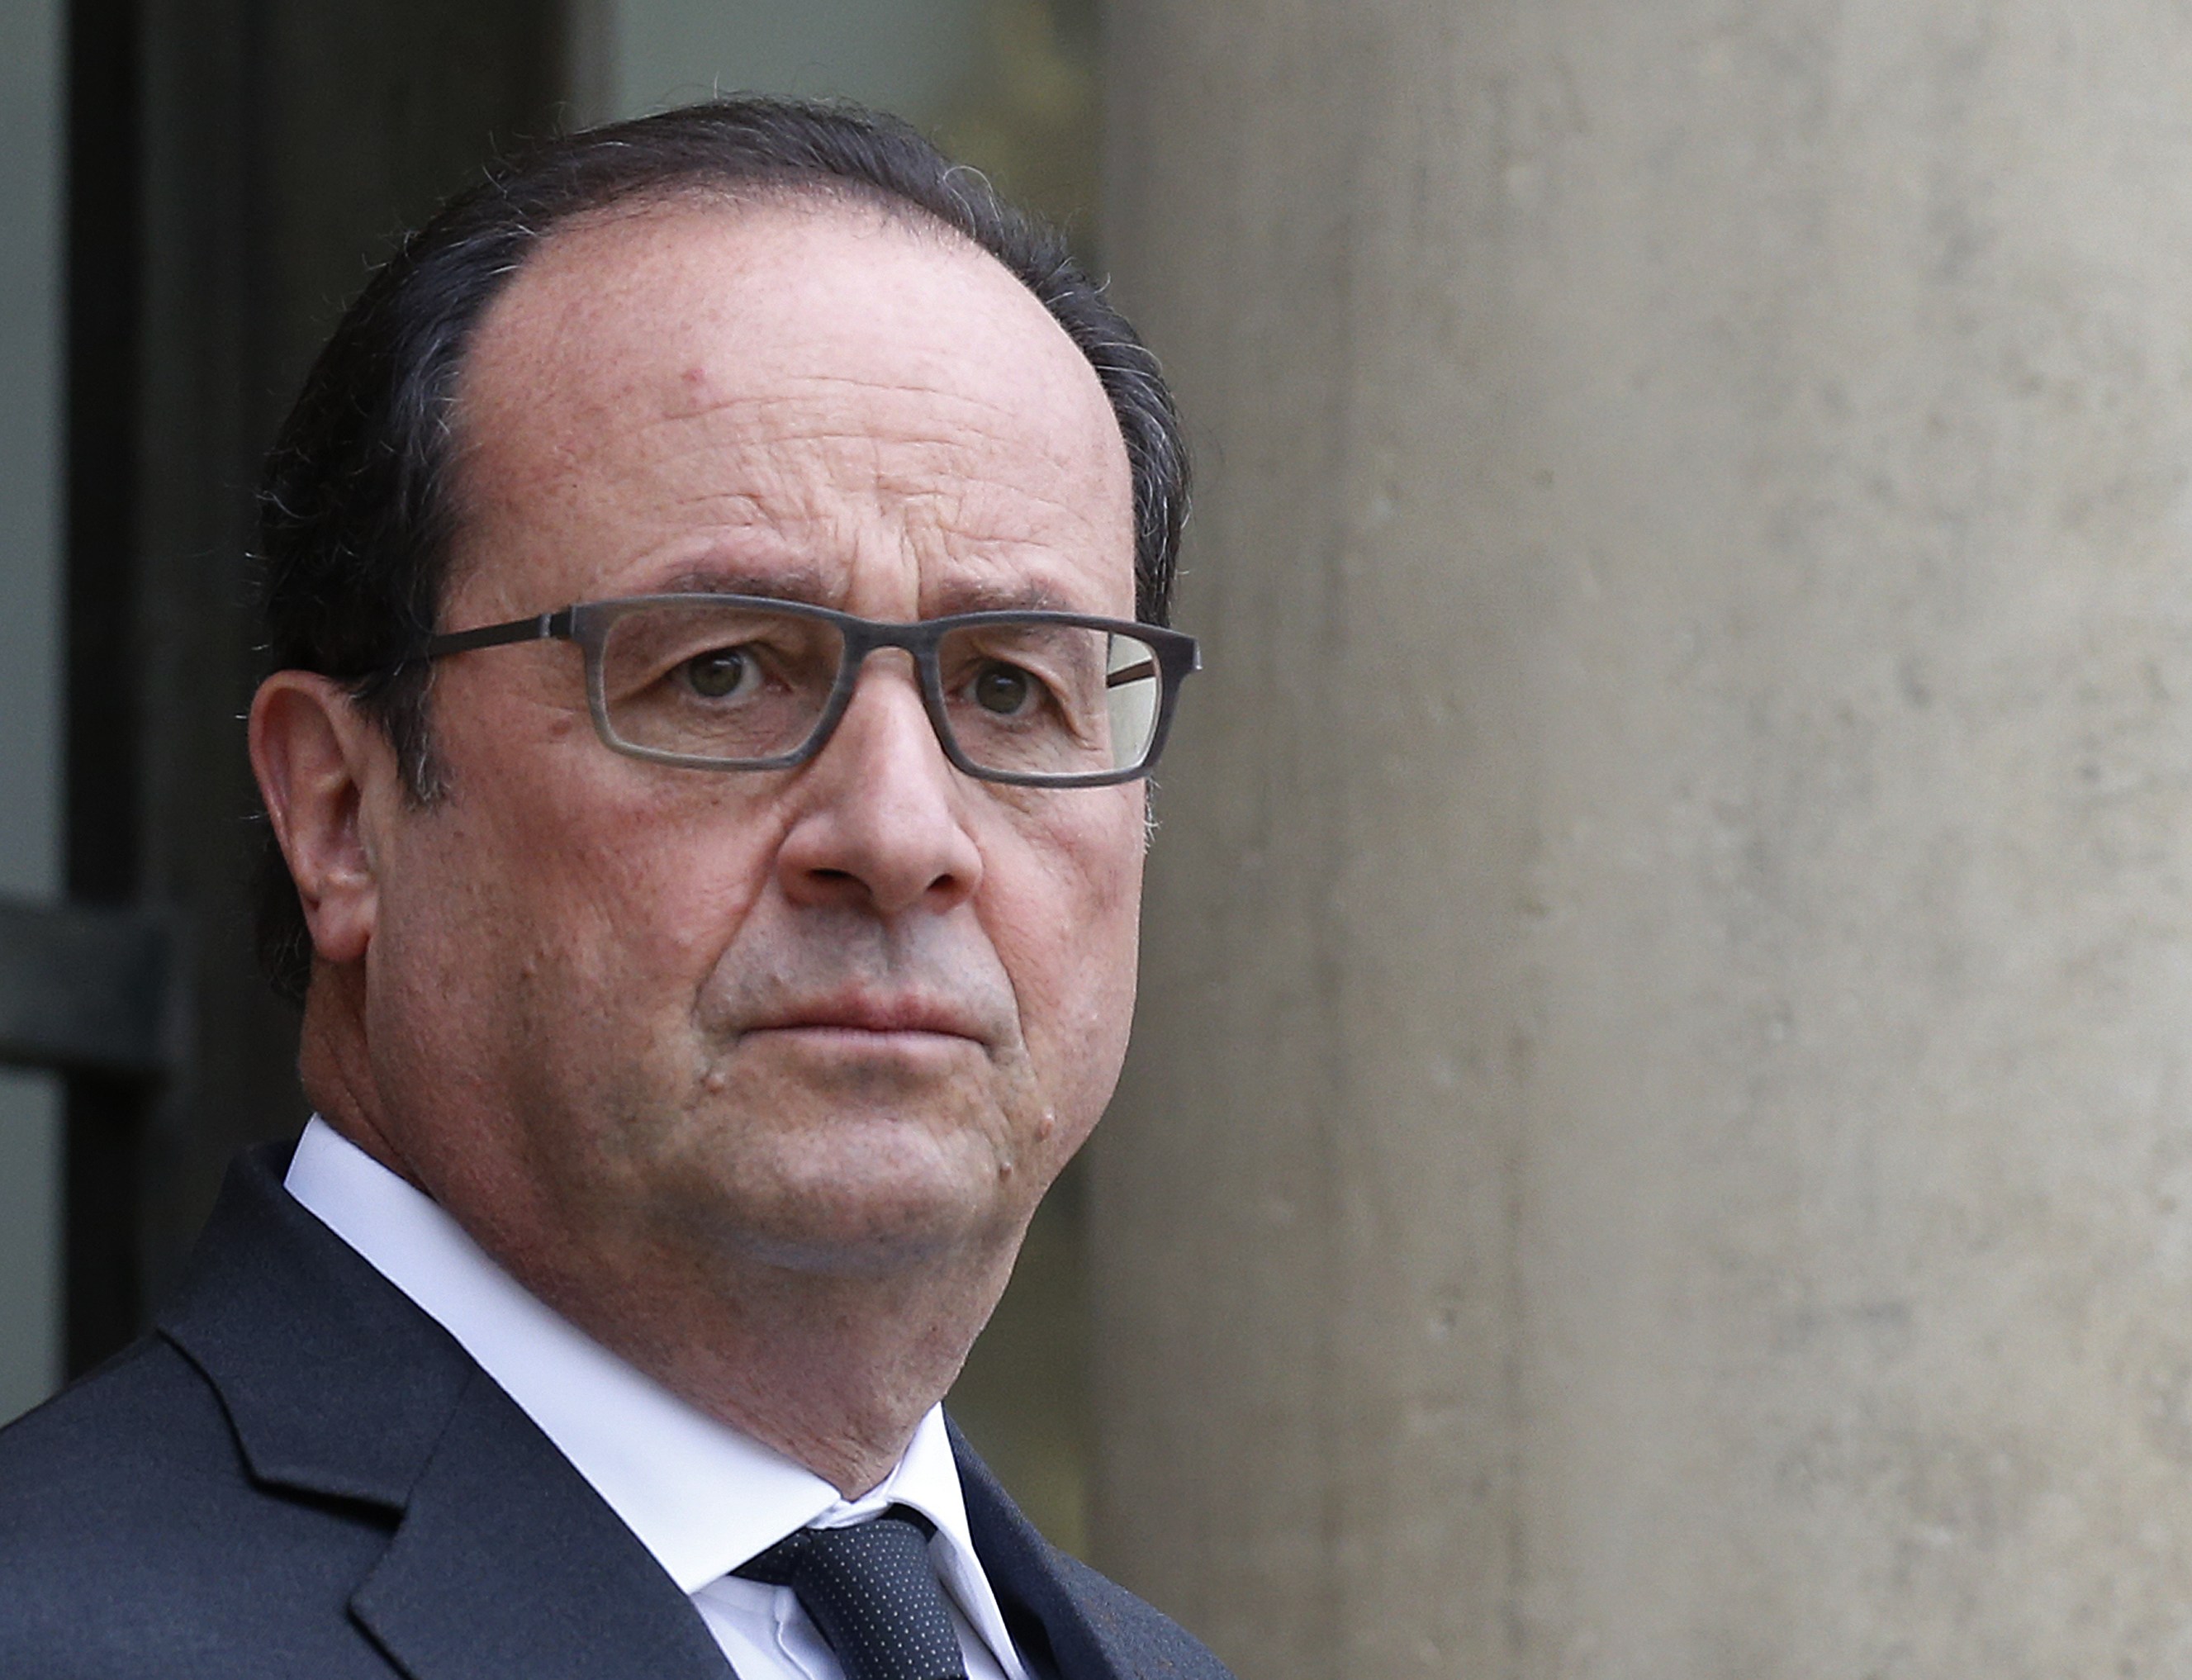 COP21 : l'accord doit être 'ambitieux et contraignant' (Hollande)